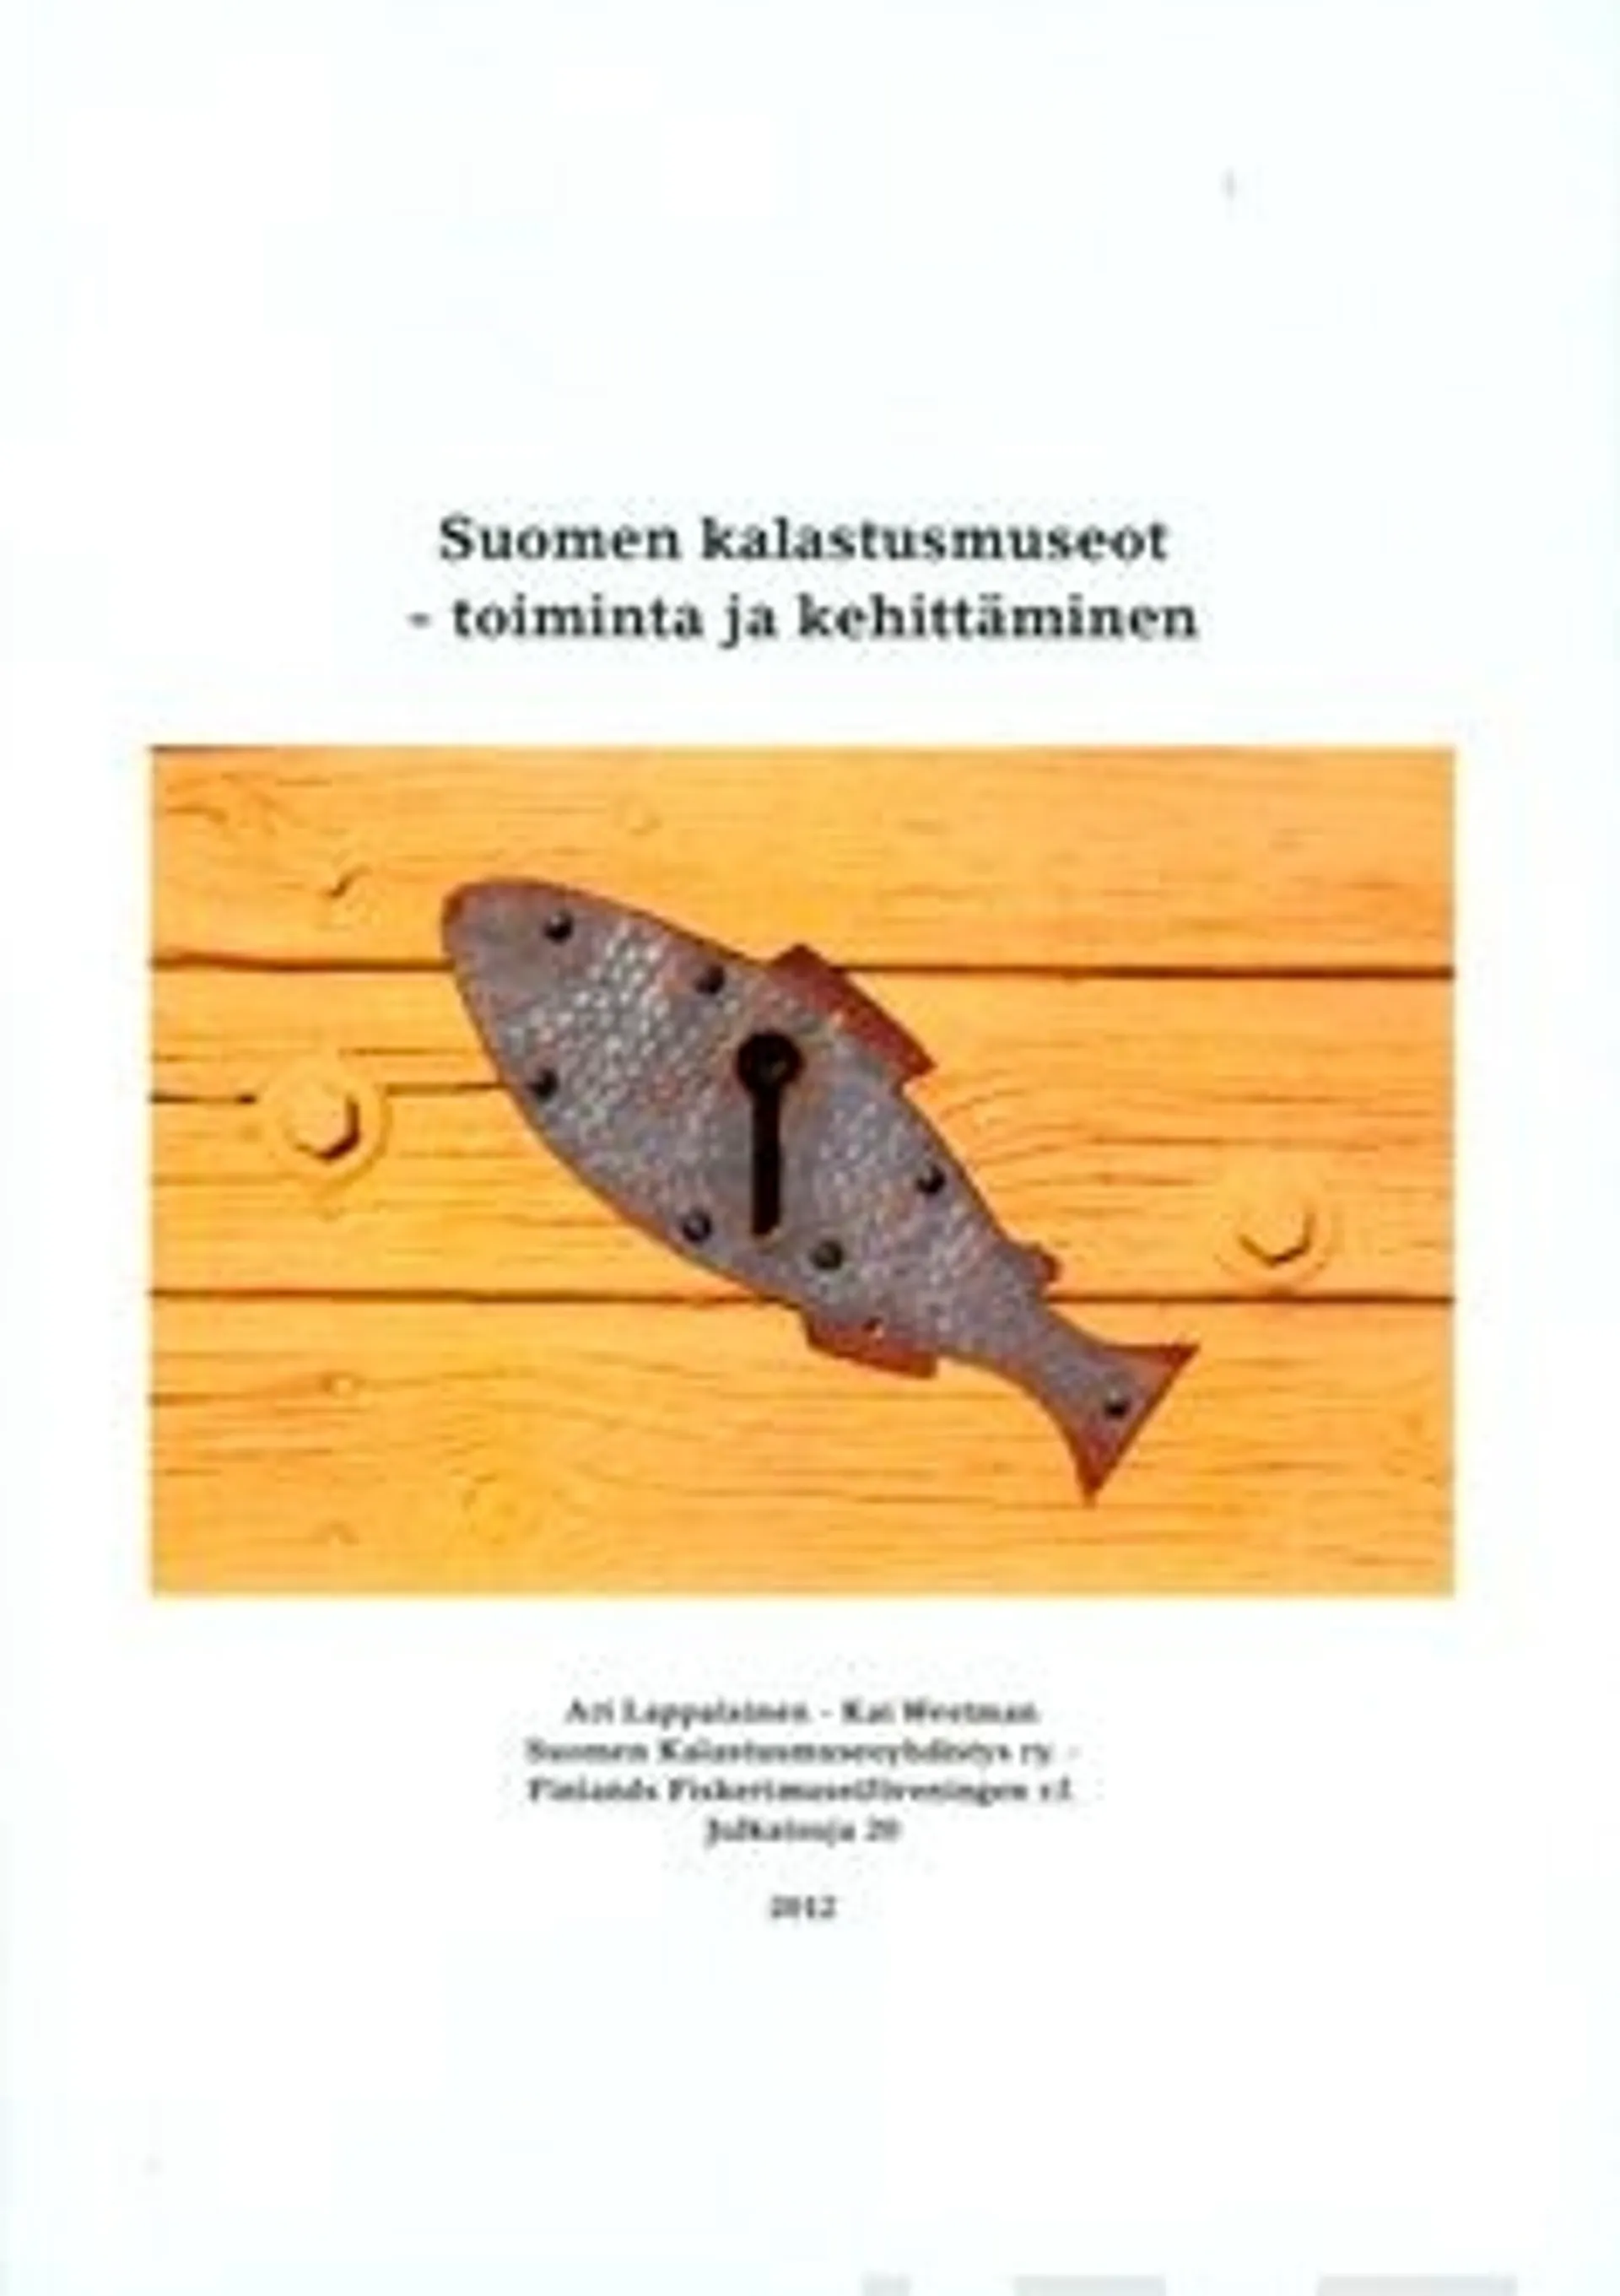 Lappalainen, Suomen kalastusmuseot - toiminta ja kehittäminen